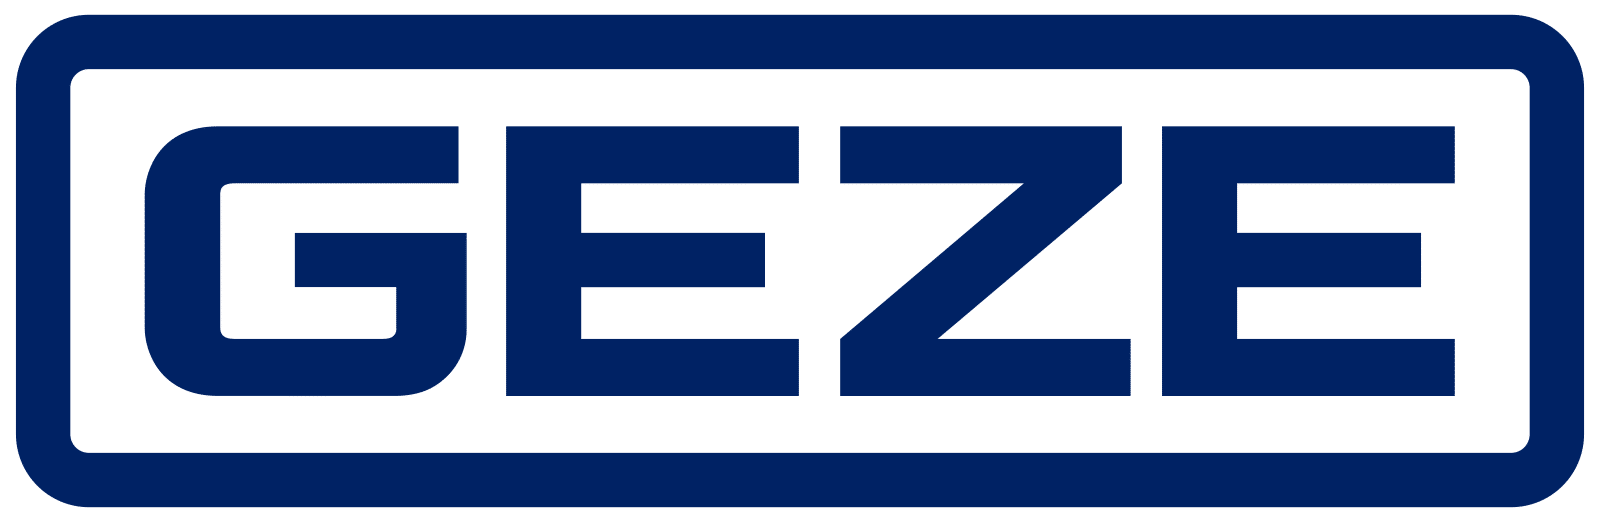 GEZE logo.svg